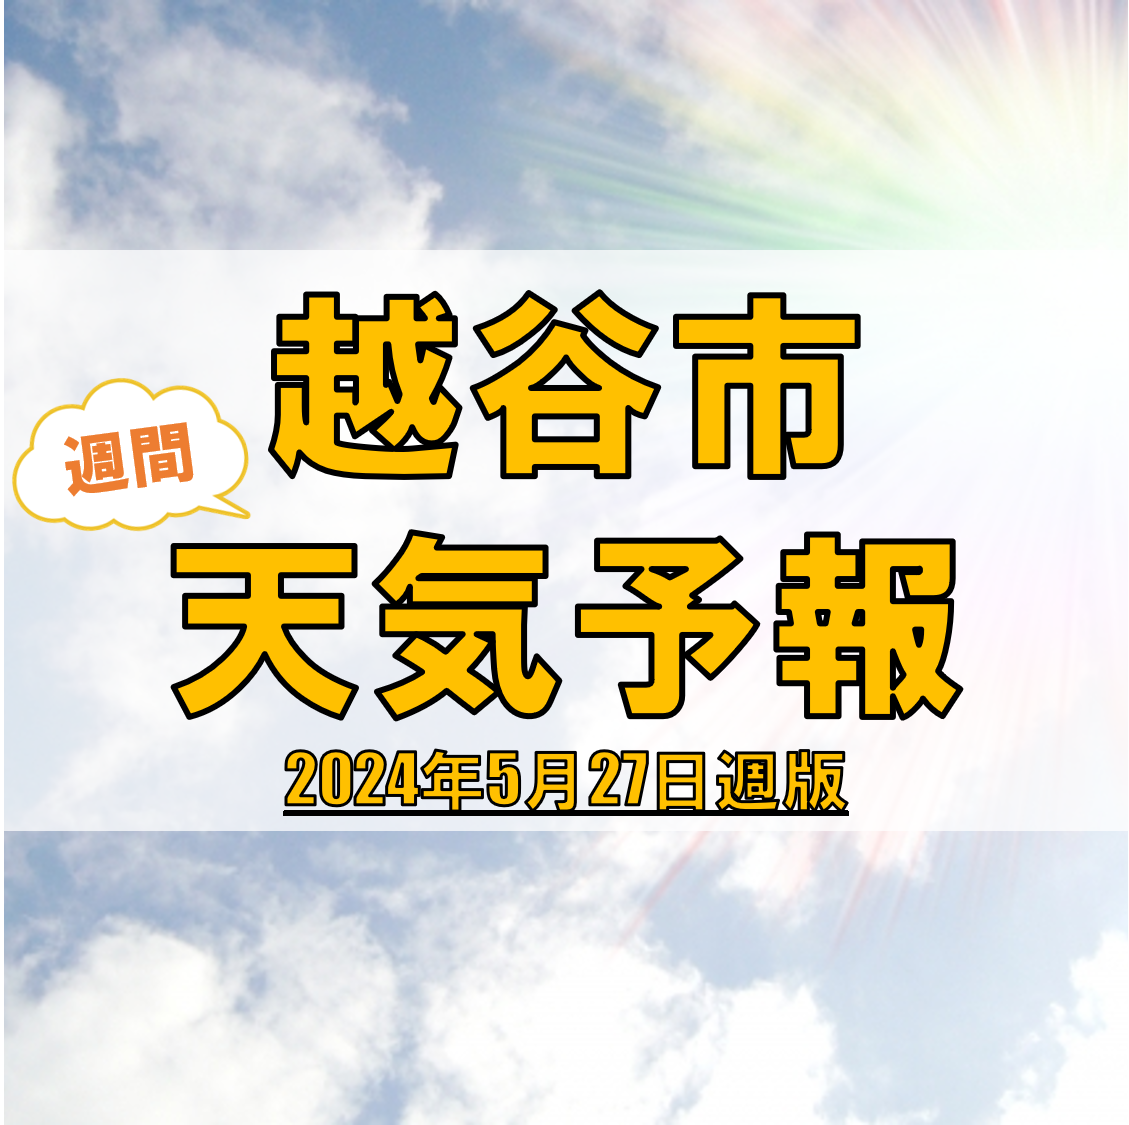 越谷市の天気 週間予報【2024年5月27日週】